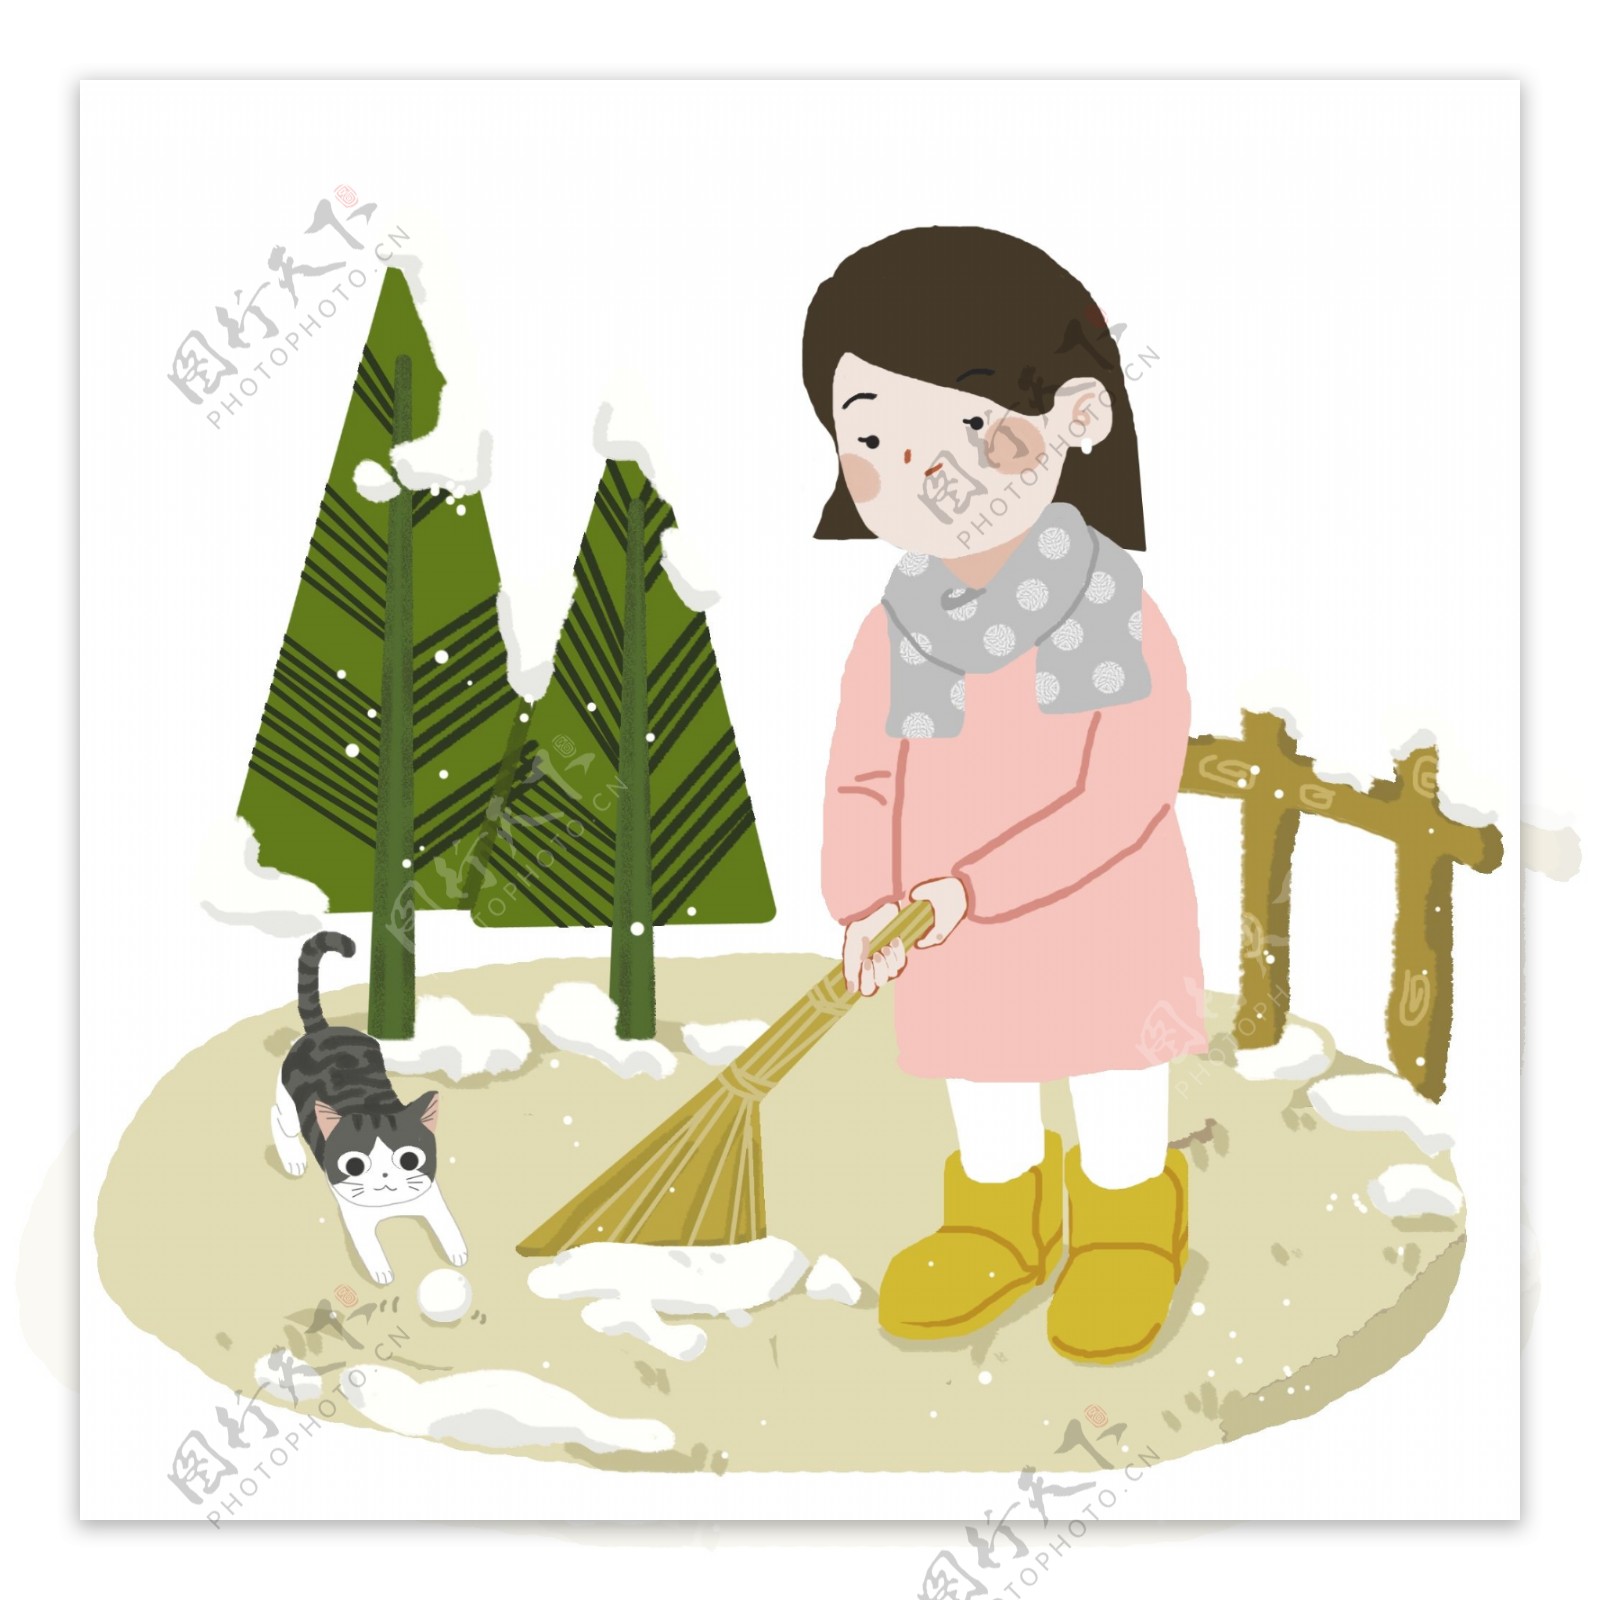 女孩在院子里扫雪图